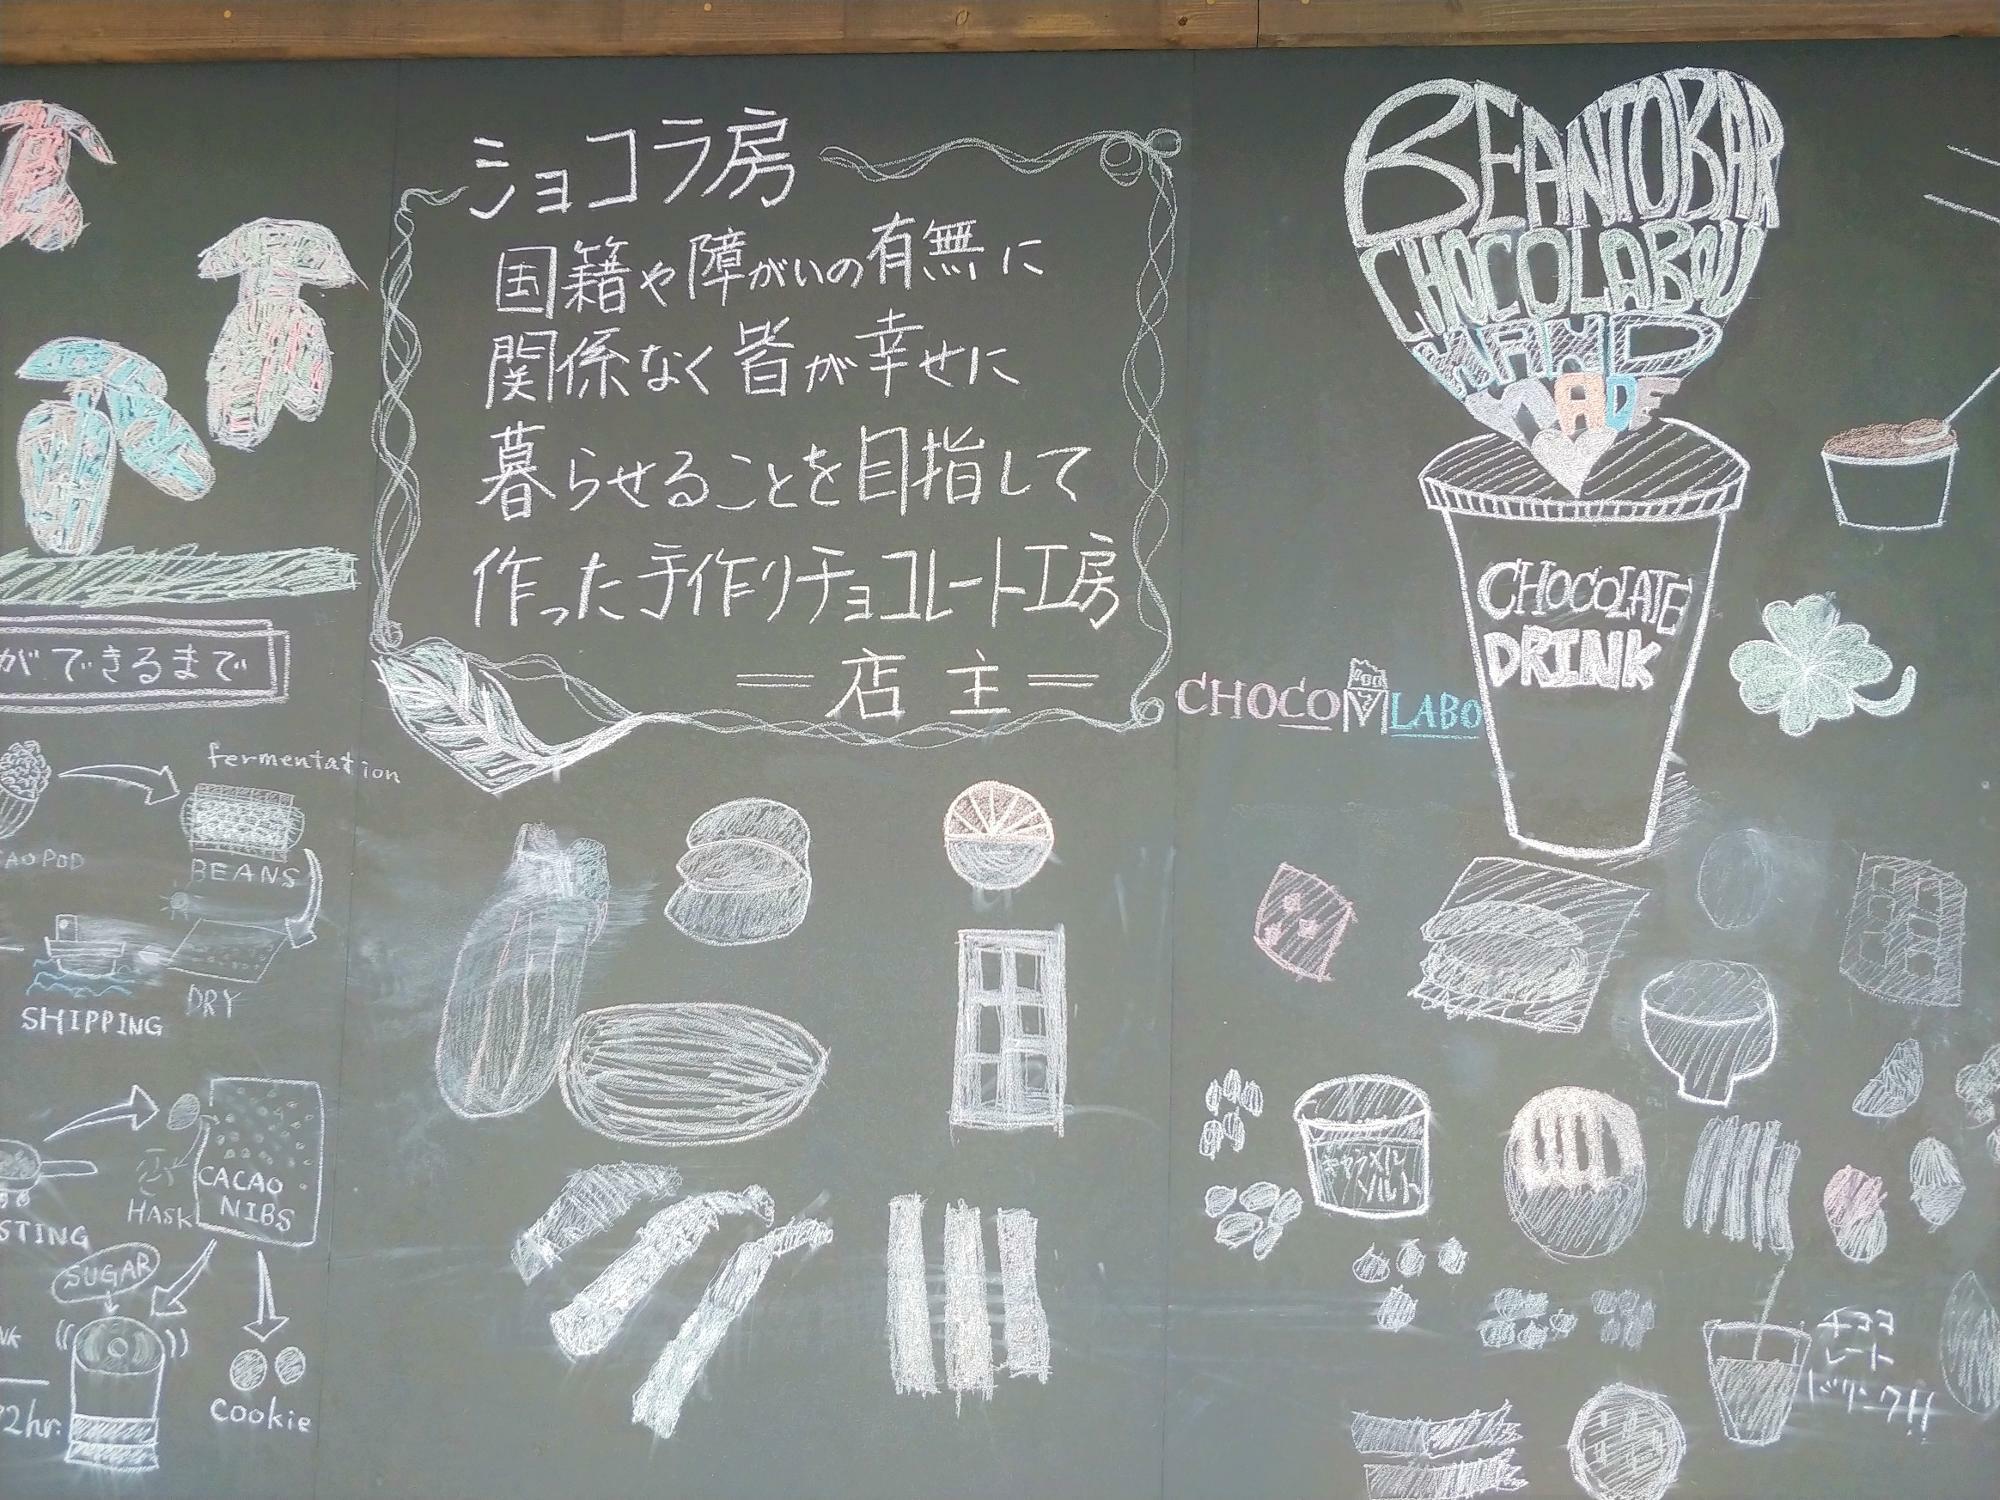 店舗の壁に掲げられた黒板には、店主のメッセージが書かれていました。